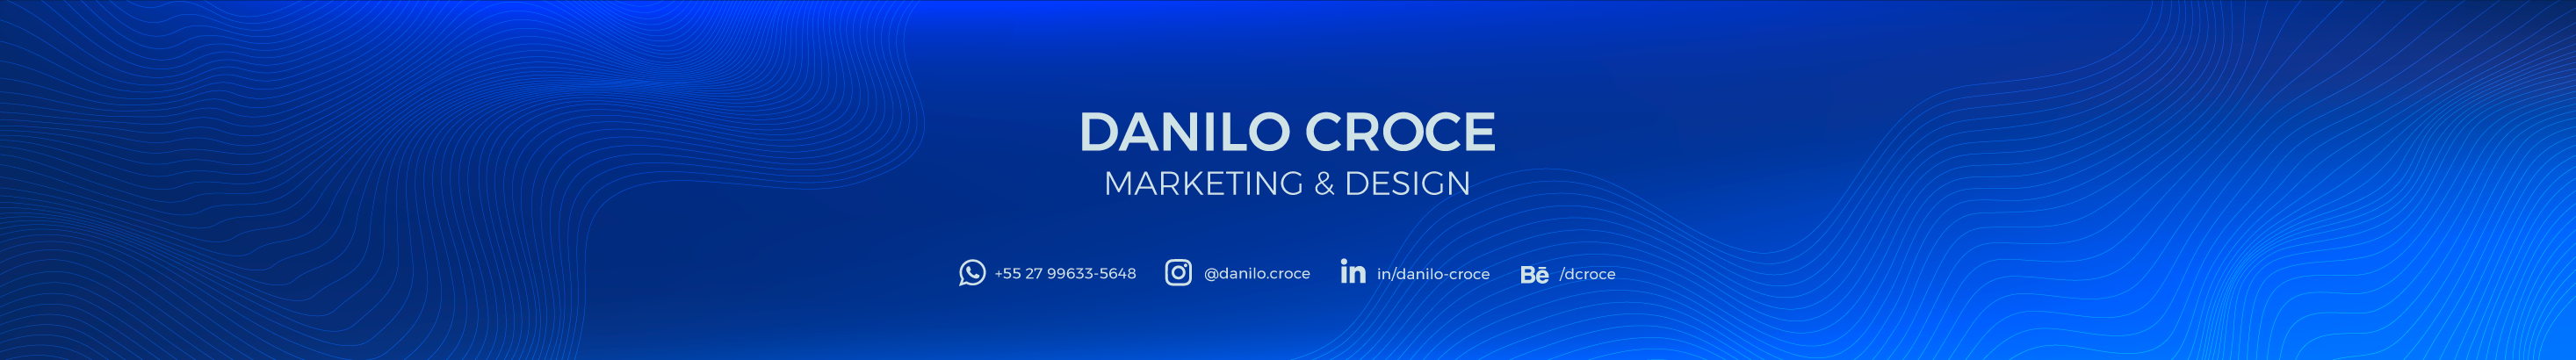 Danilo Croce's profile banner